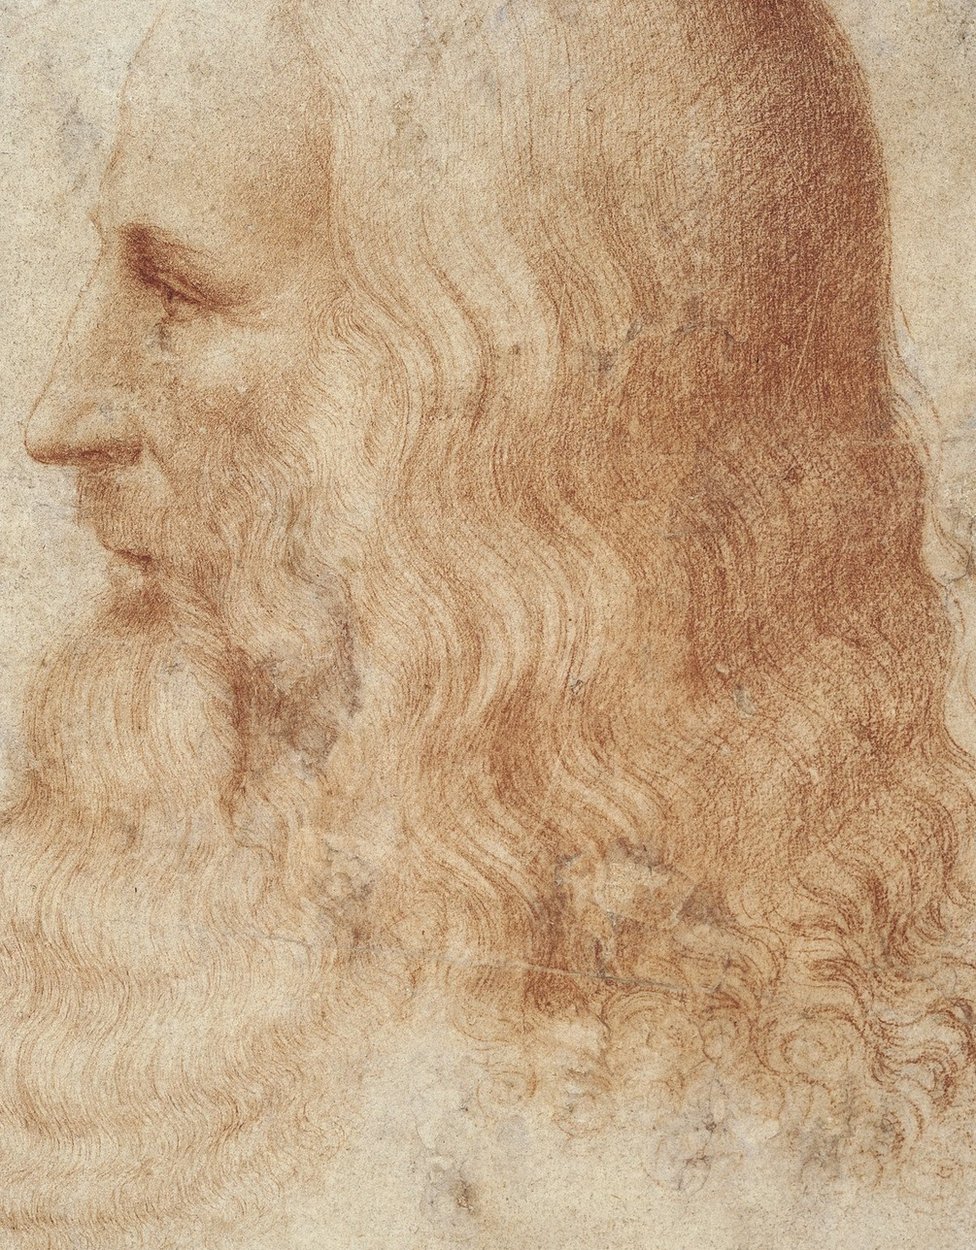 «Портрет Леонардо», выполненный одним из его учеников Франческо Мельци между 1515 - 1518 годами